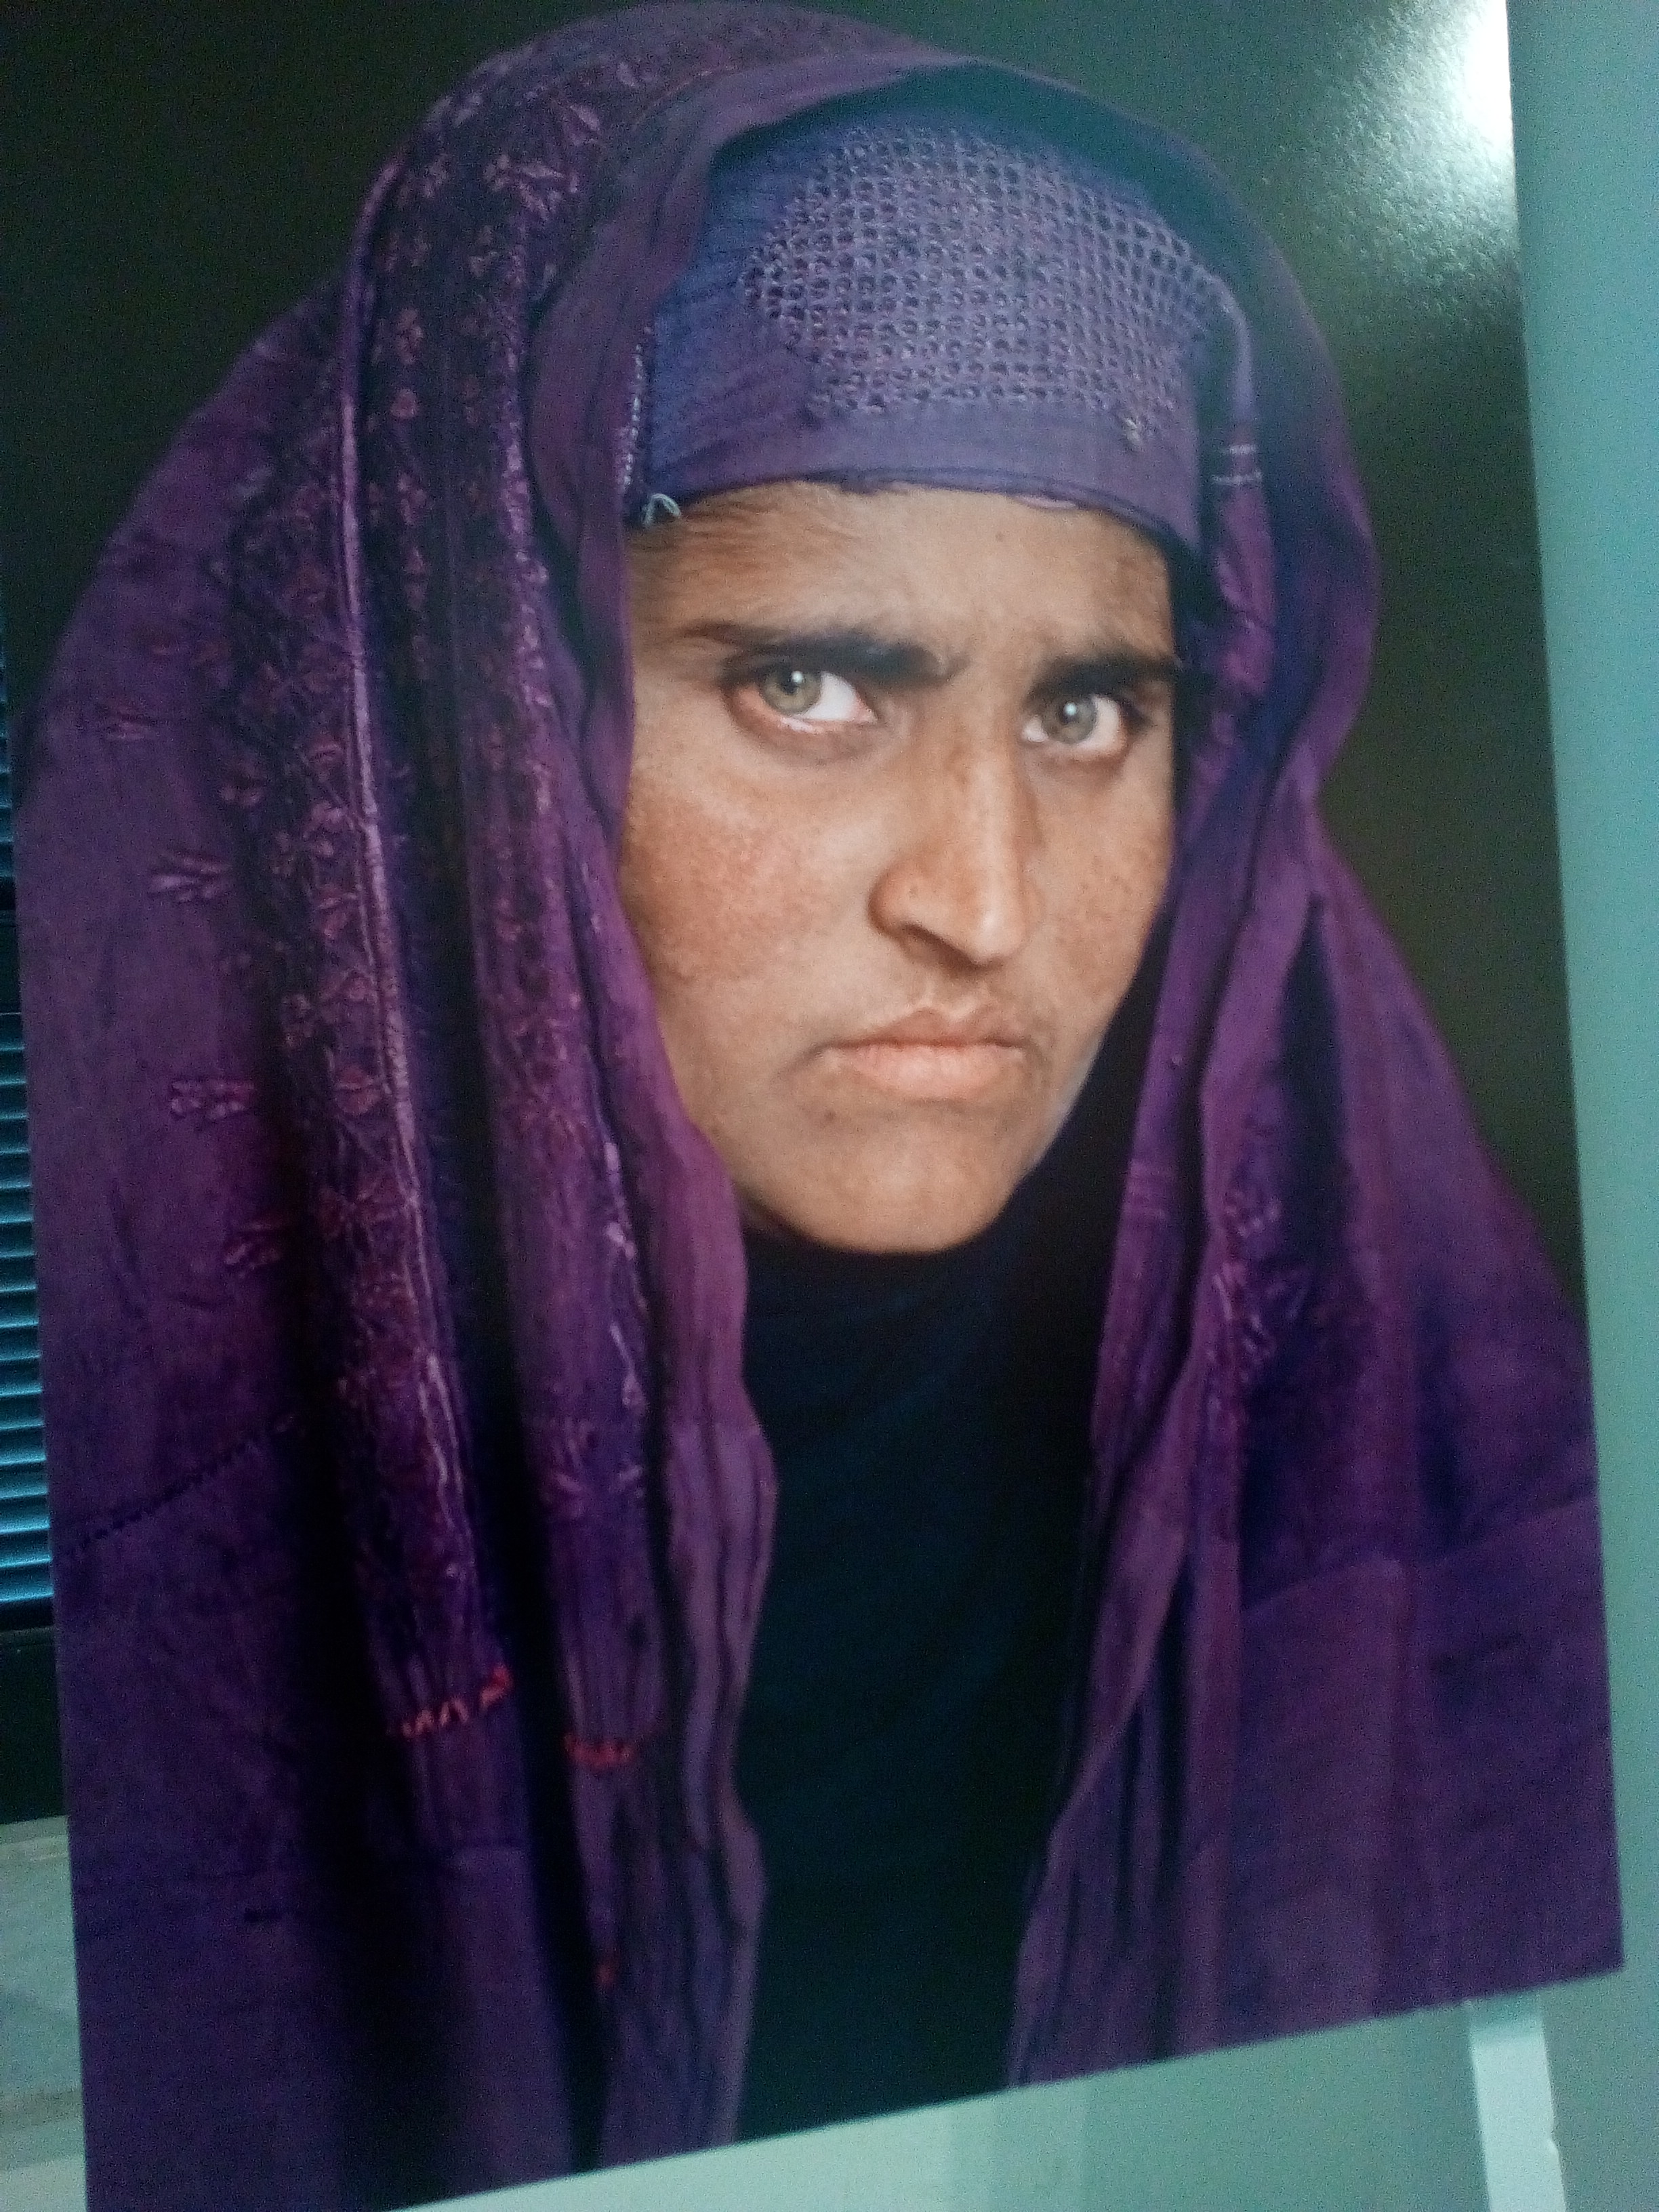 La ragazza afgana di Steve McCurry 17 anni dopo